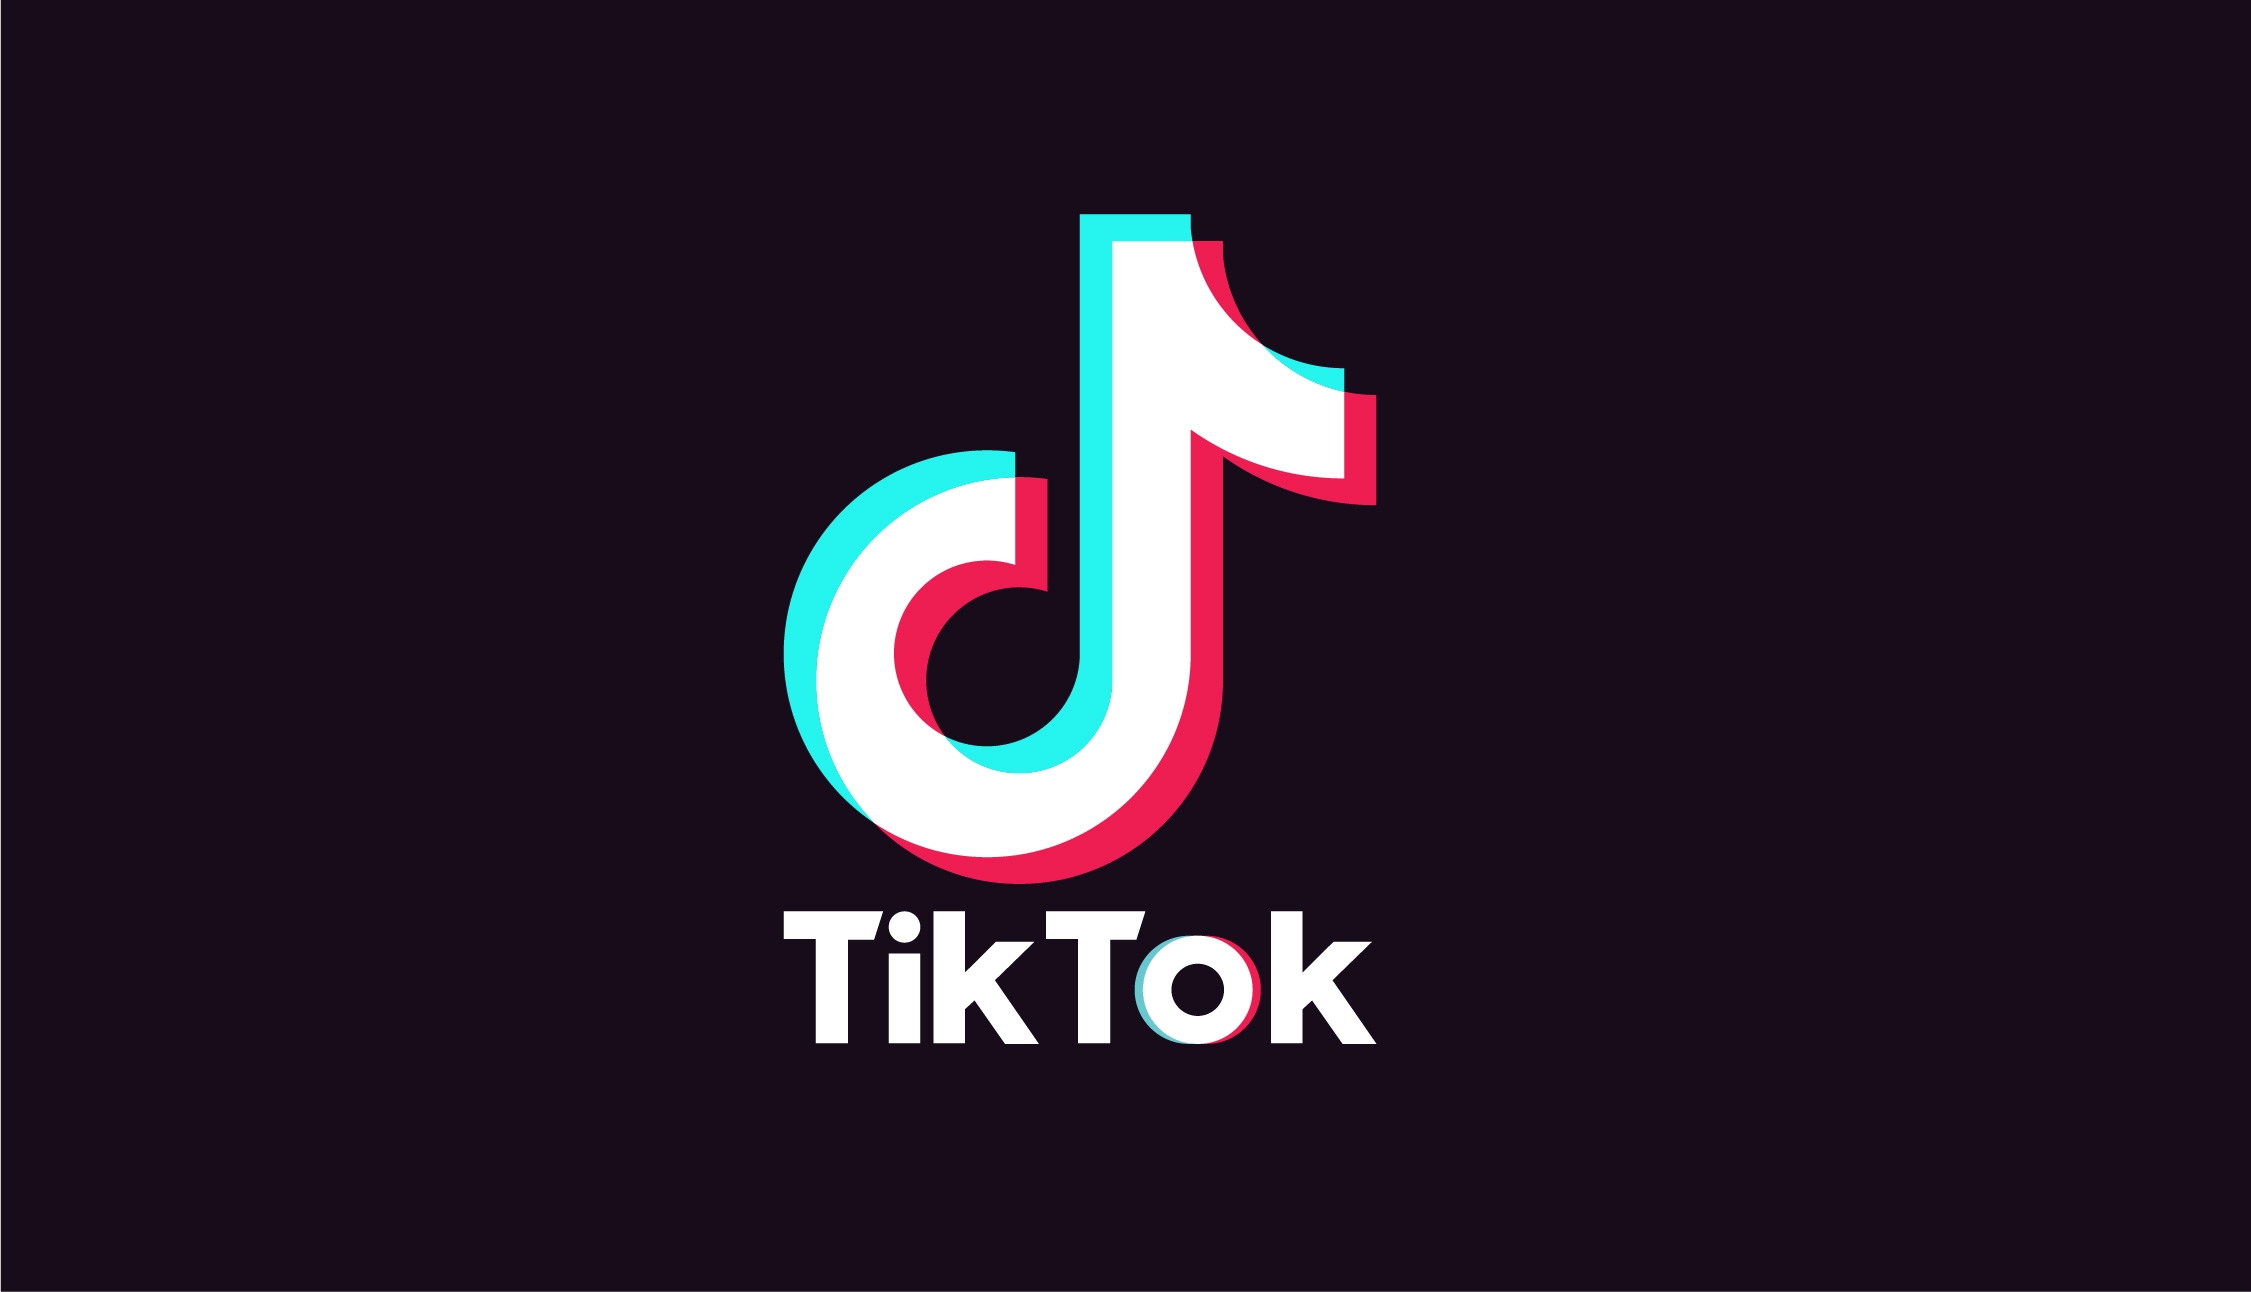 Divulgação/Logo TikTok